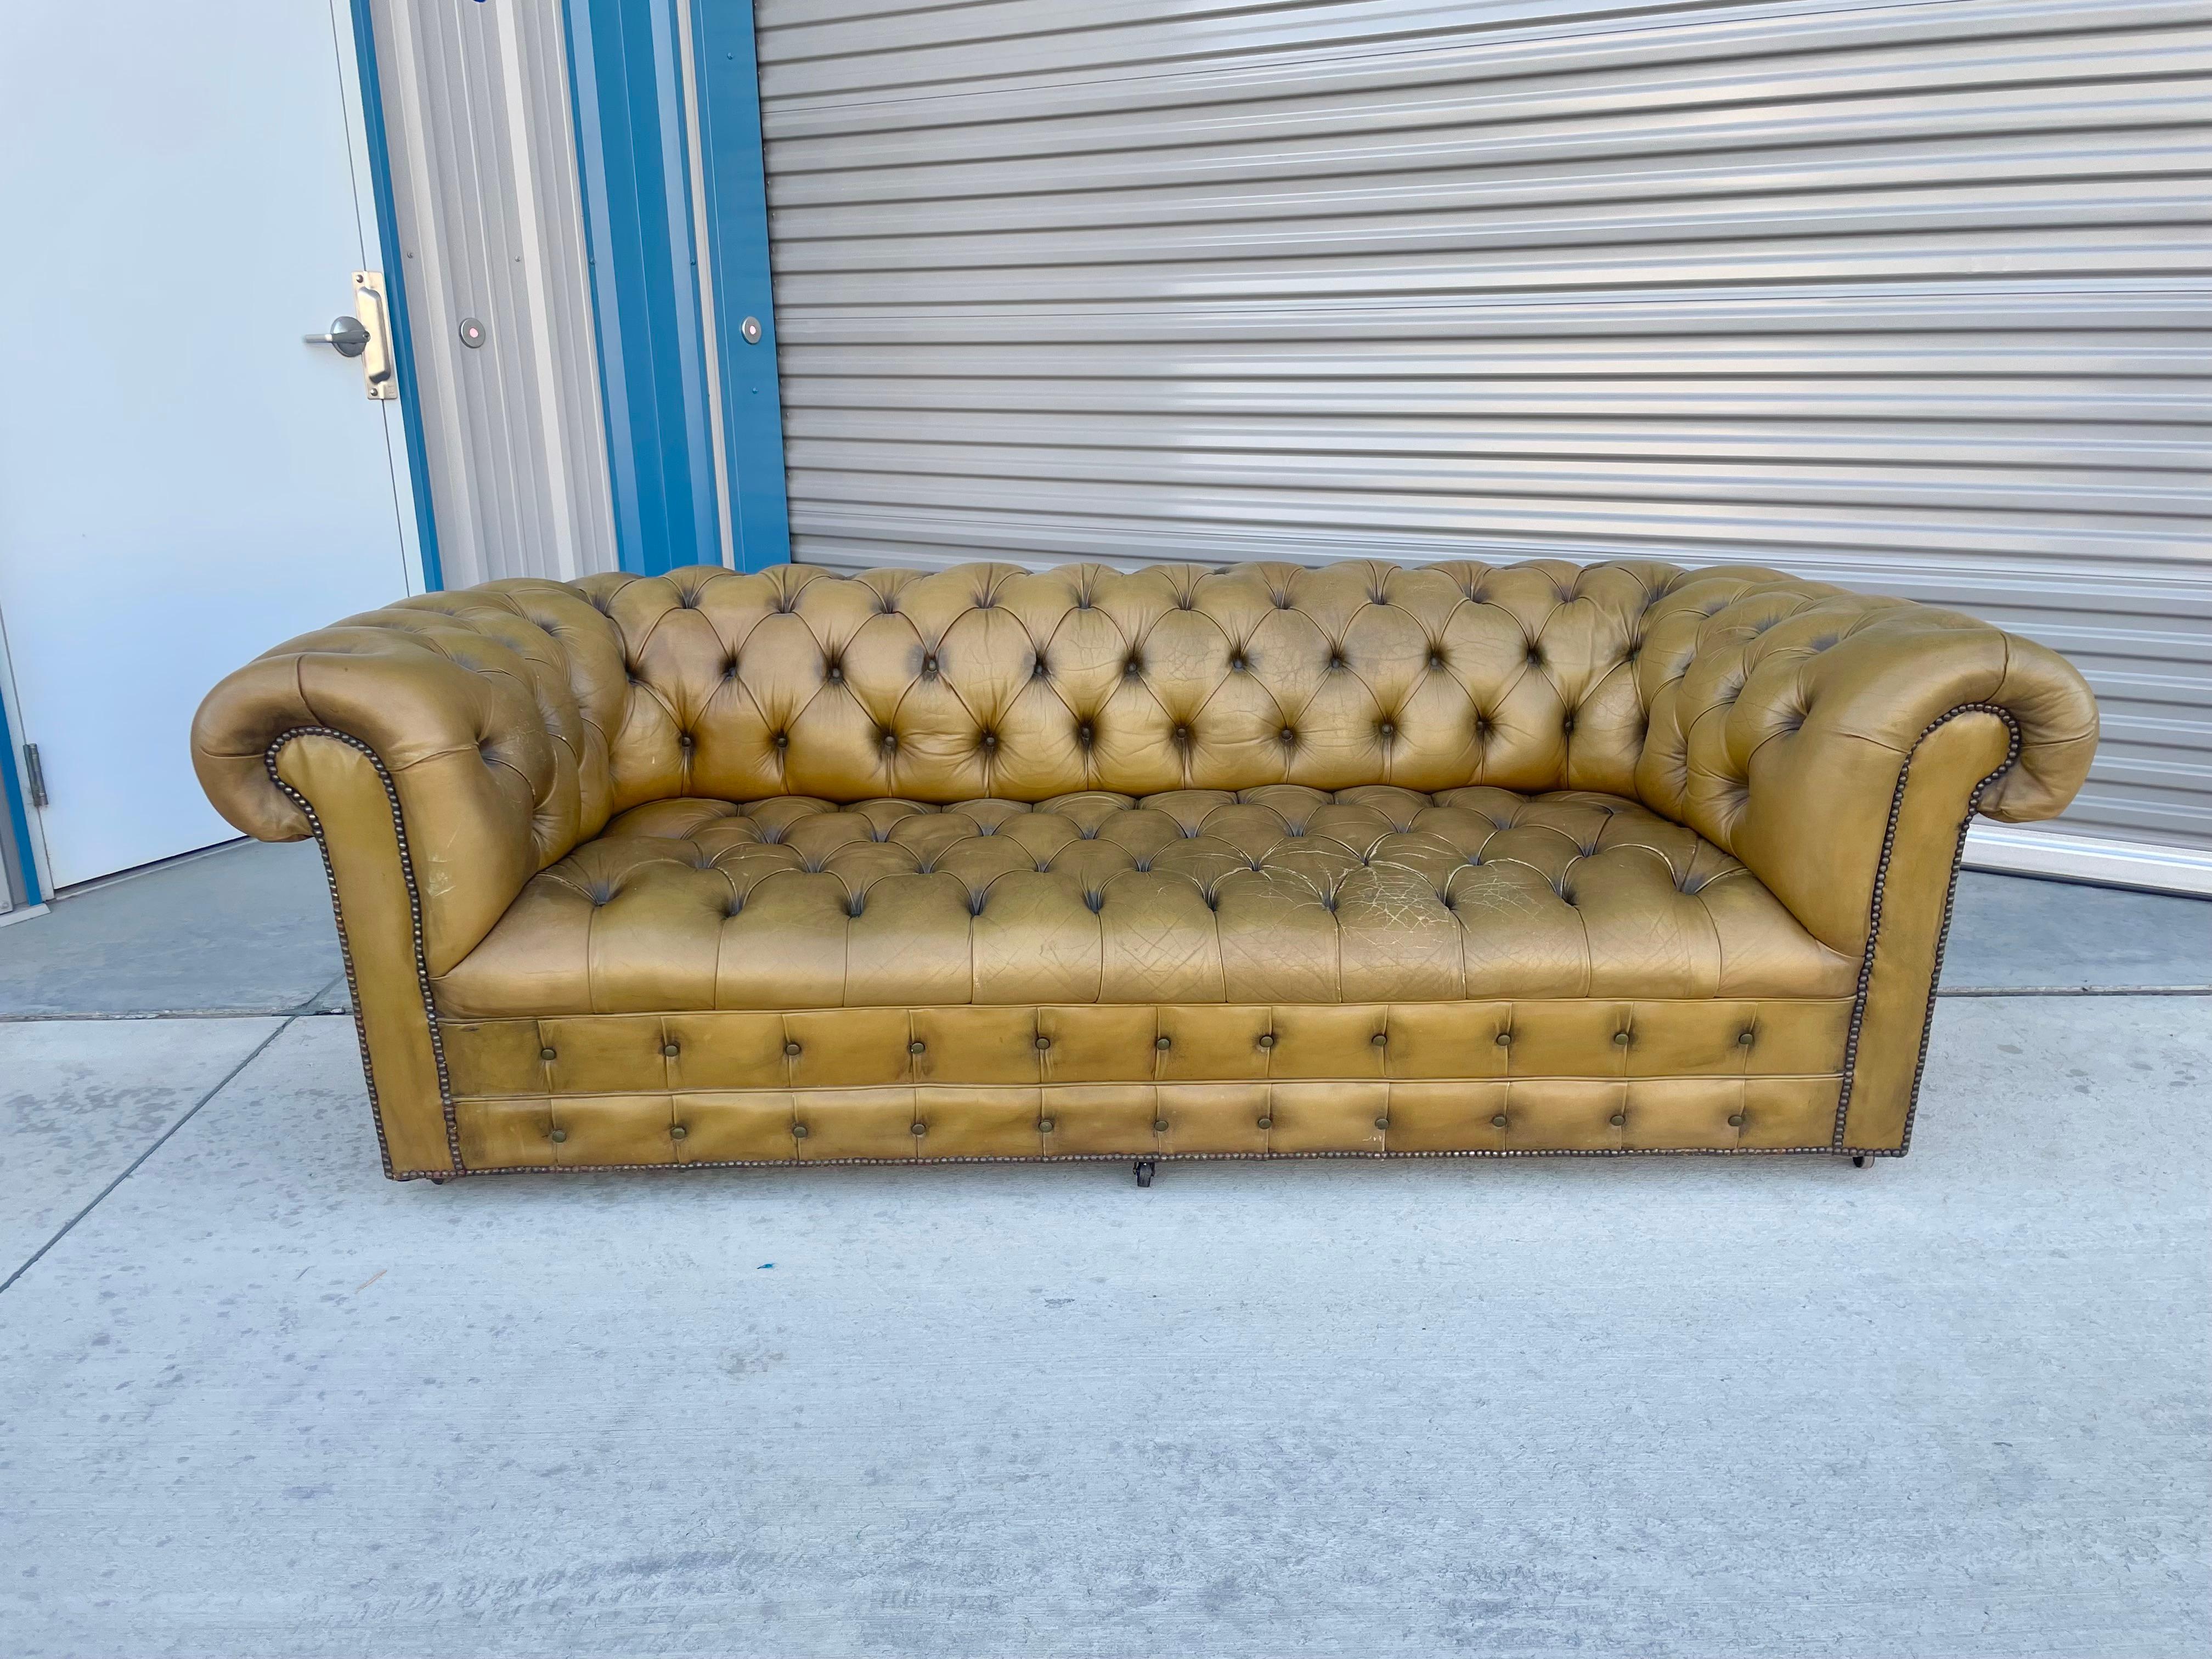 Vintage Chesterfield-Ledersofa, entworfen und hergestellt in den Vereinigten Staaten, ca. 1970er Jahre. Dieses atemberaubende Sofa verfügt über eine getuftete Lederpolsterung, die ihm einen klassischen und zeitlosen Look verleiht. Ich liebe sein